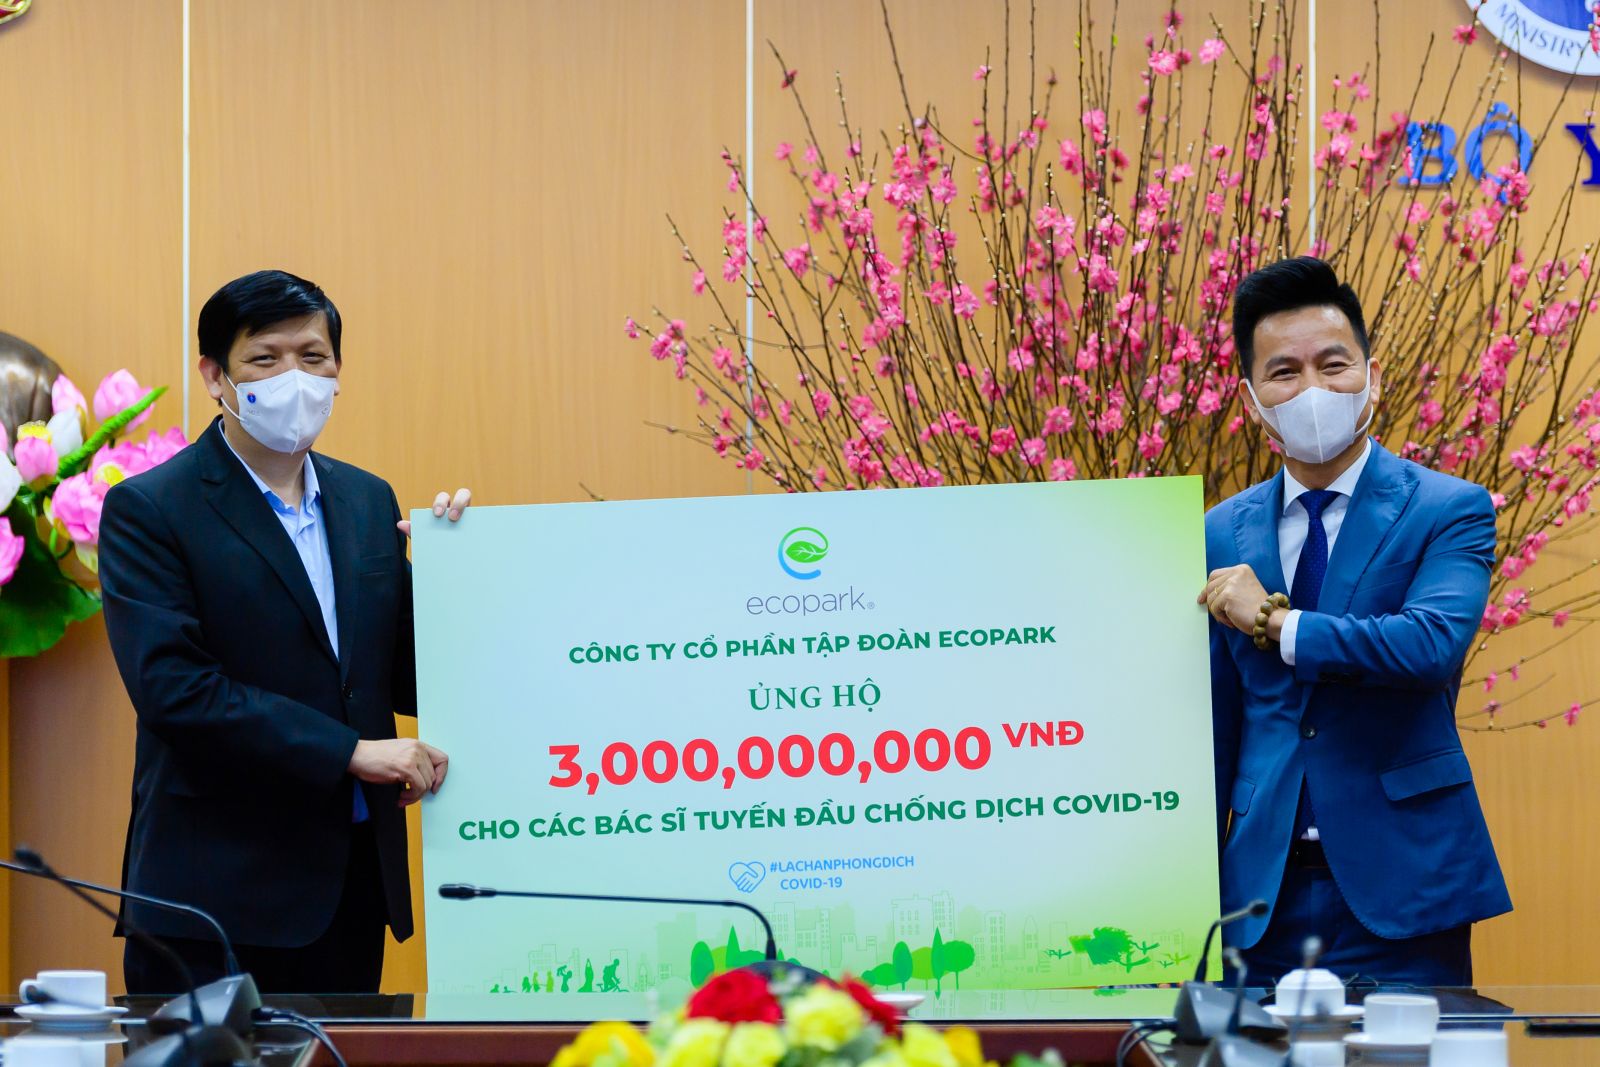 Ông Trần Quốc Việt – Tổng Giám đốc Ecopark (bên phải) trao tặng 3 tỉ đồng cho các bác sĩ tuyến đầu chống dịch COVID-19